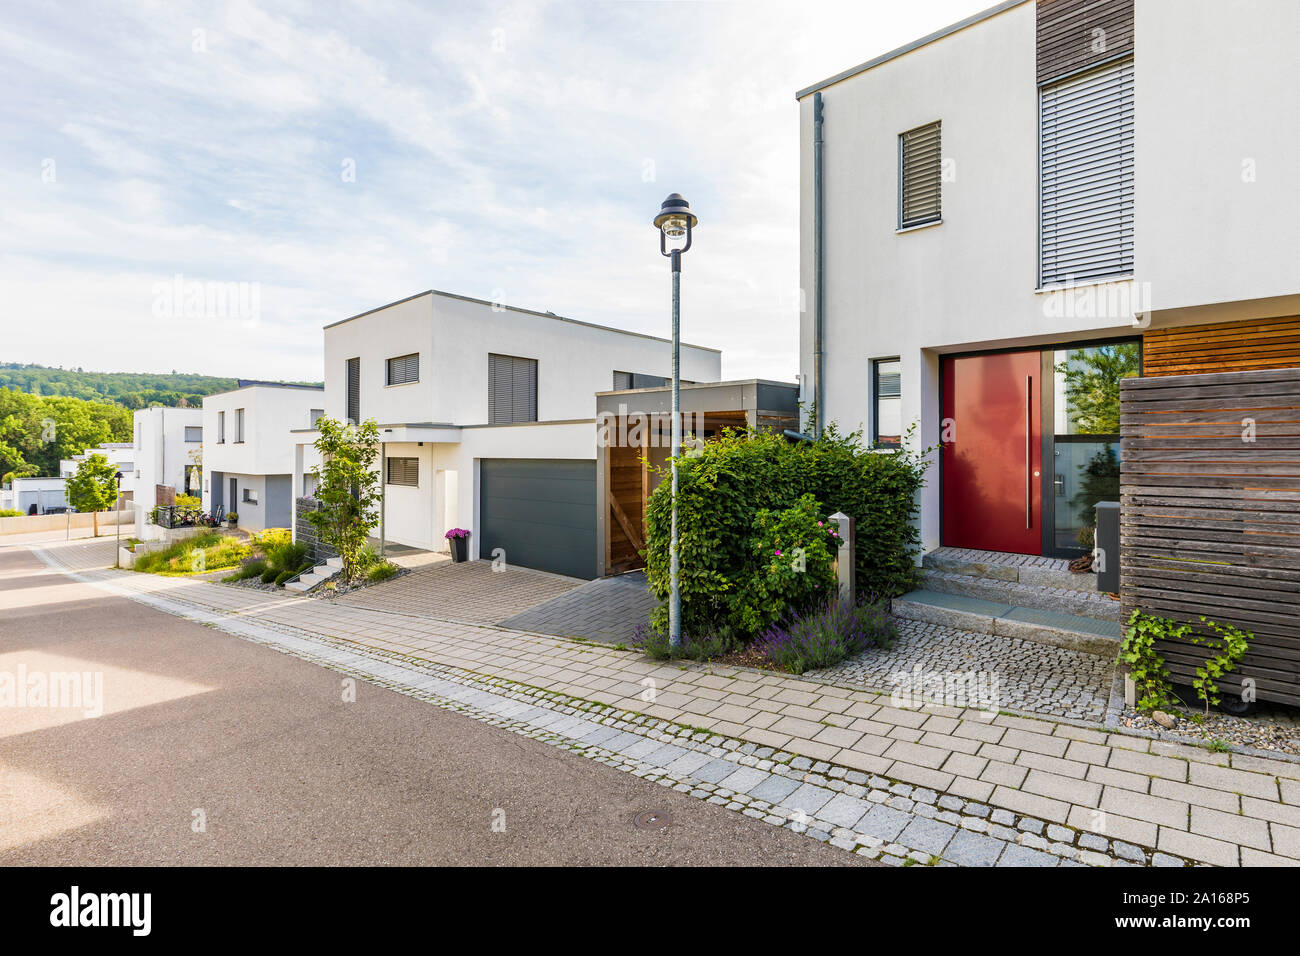 Germany, Baden-Wurttemberg, Esslingen, New energy efficient residential houses Stock Photo